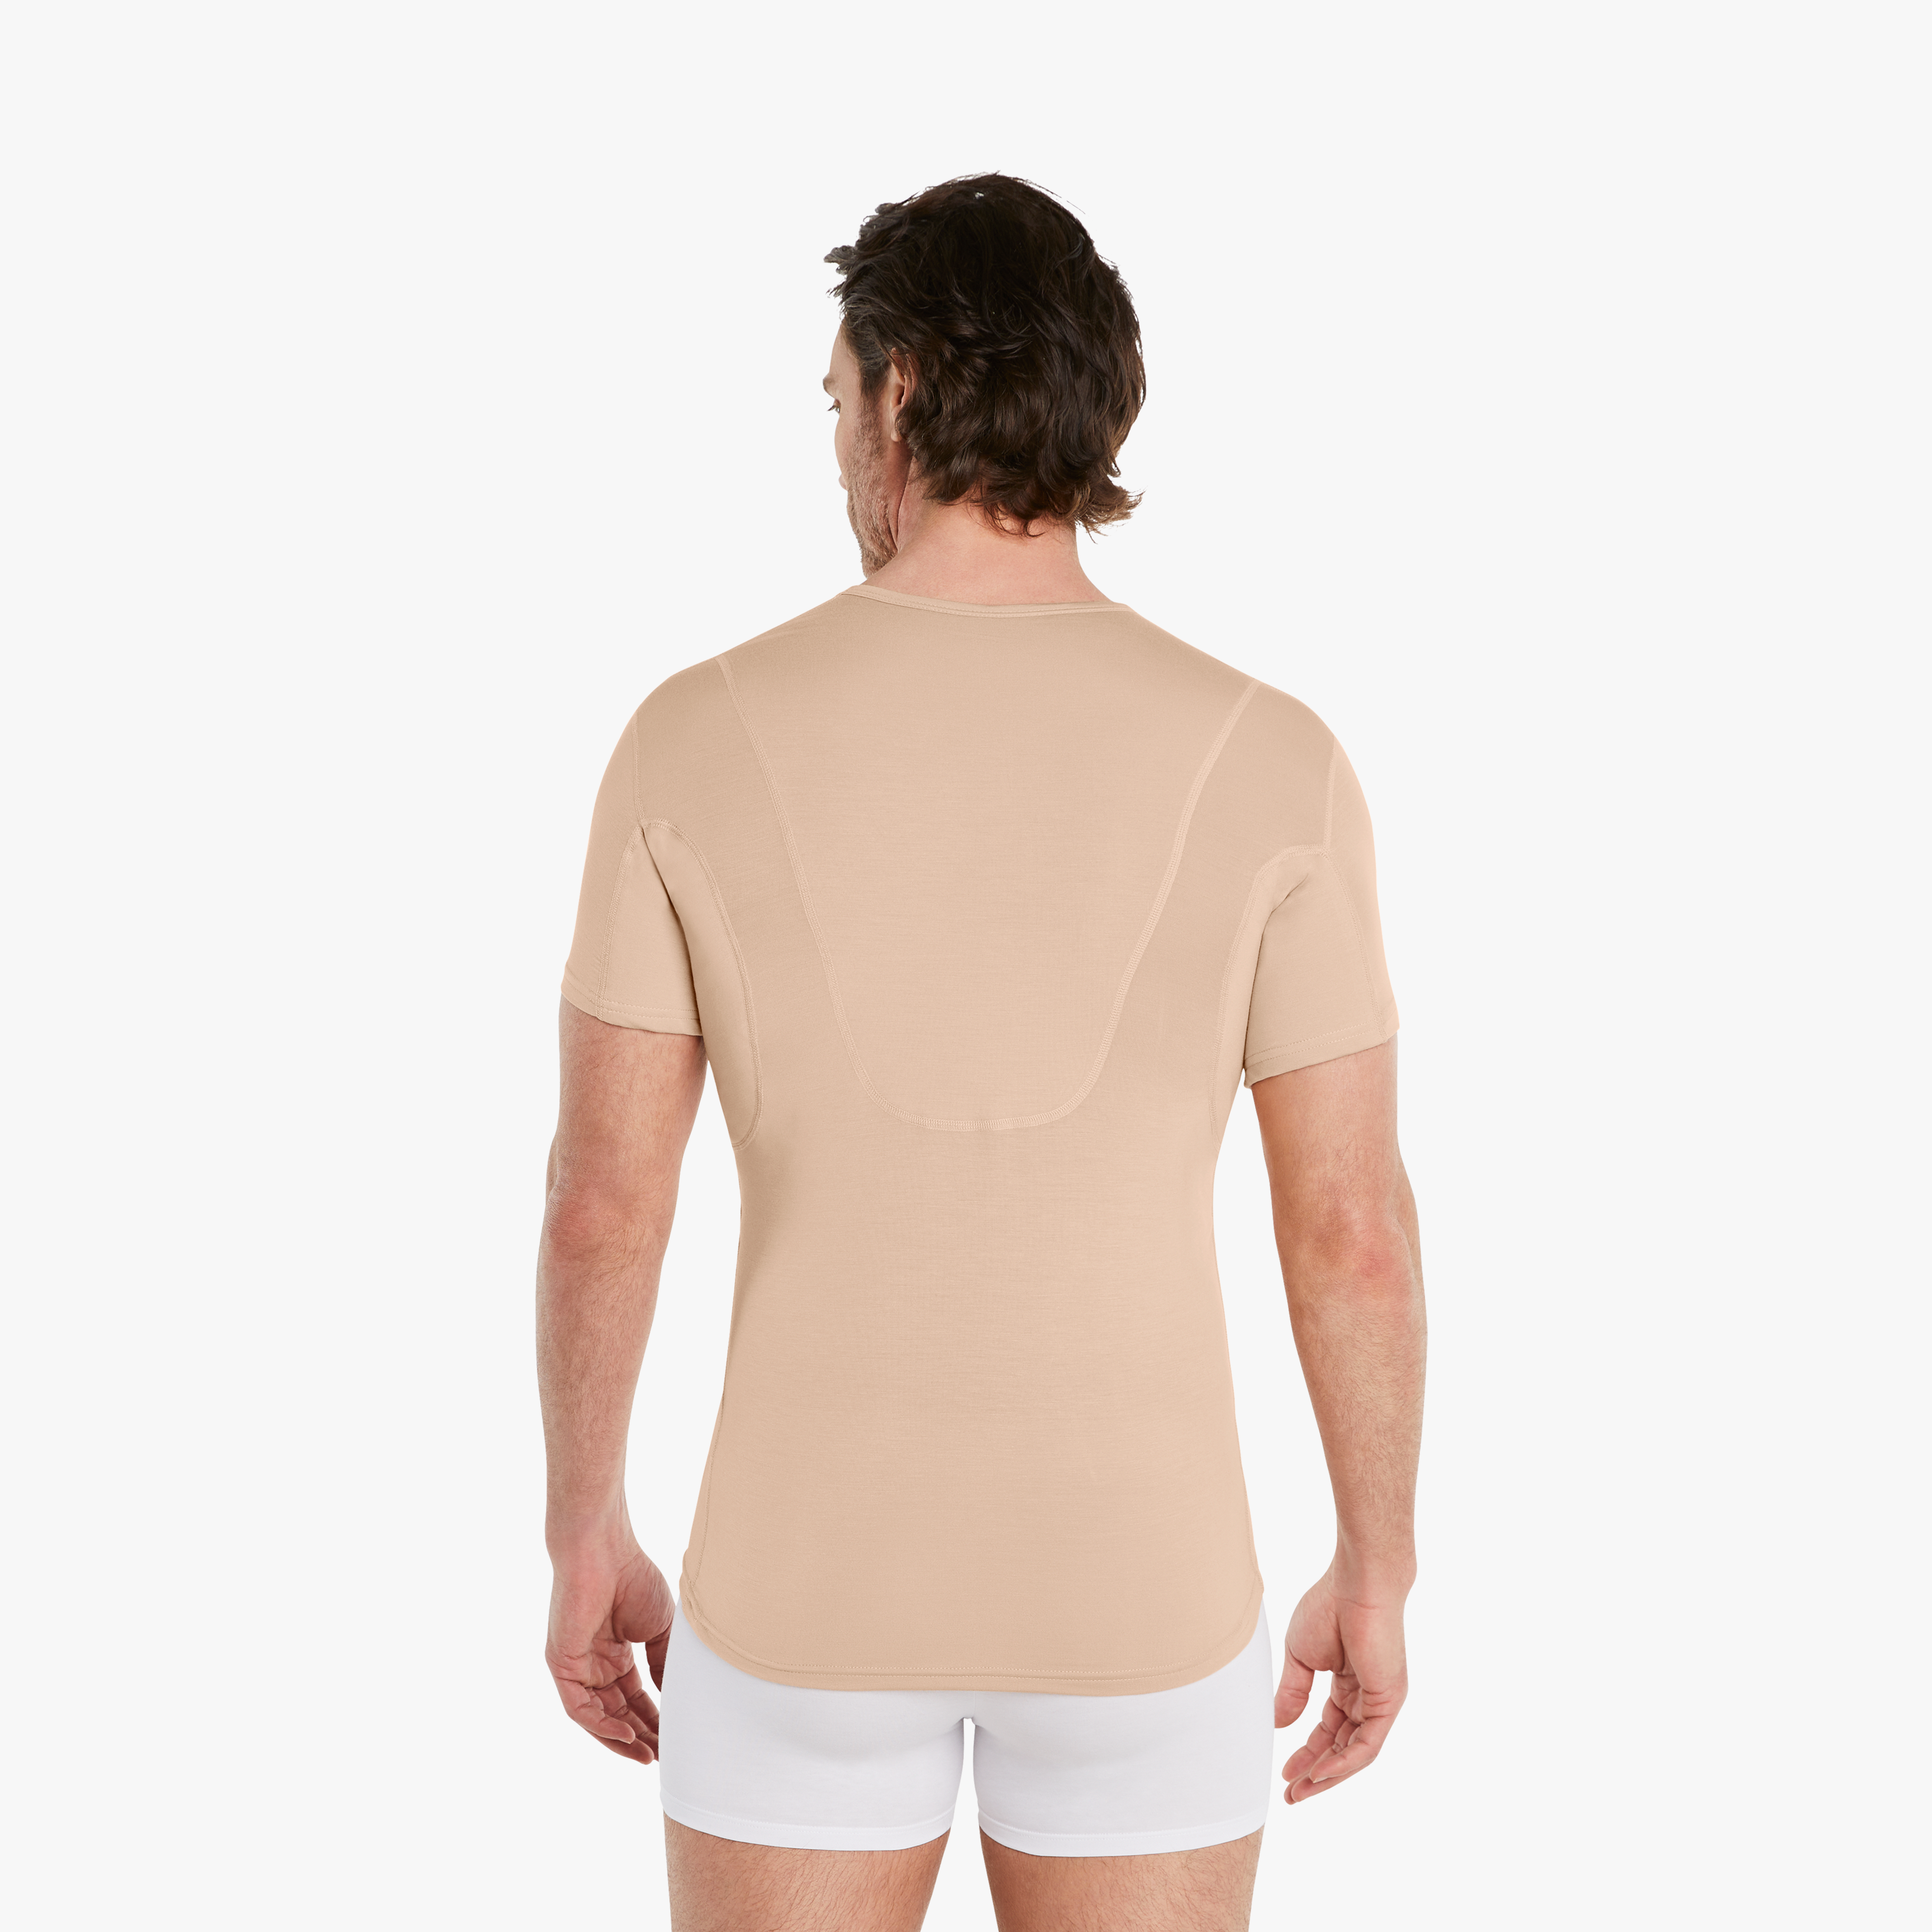 Mann in nude Anti-Schweiß Unterhemd Herren mit Rückeneinlage, Größe M. 100% Schutz vor Schweißflecken, Drywear Shirt mit extra-saugfähiger Schicht.#farbe_nude